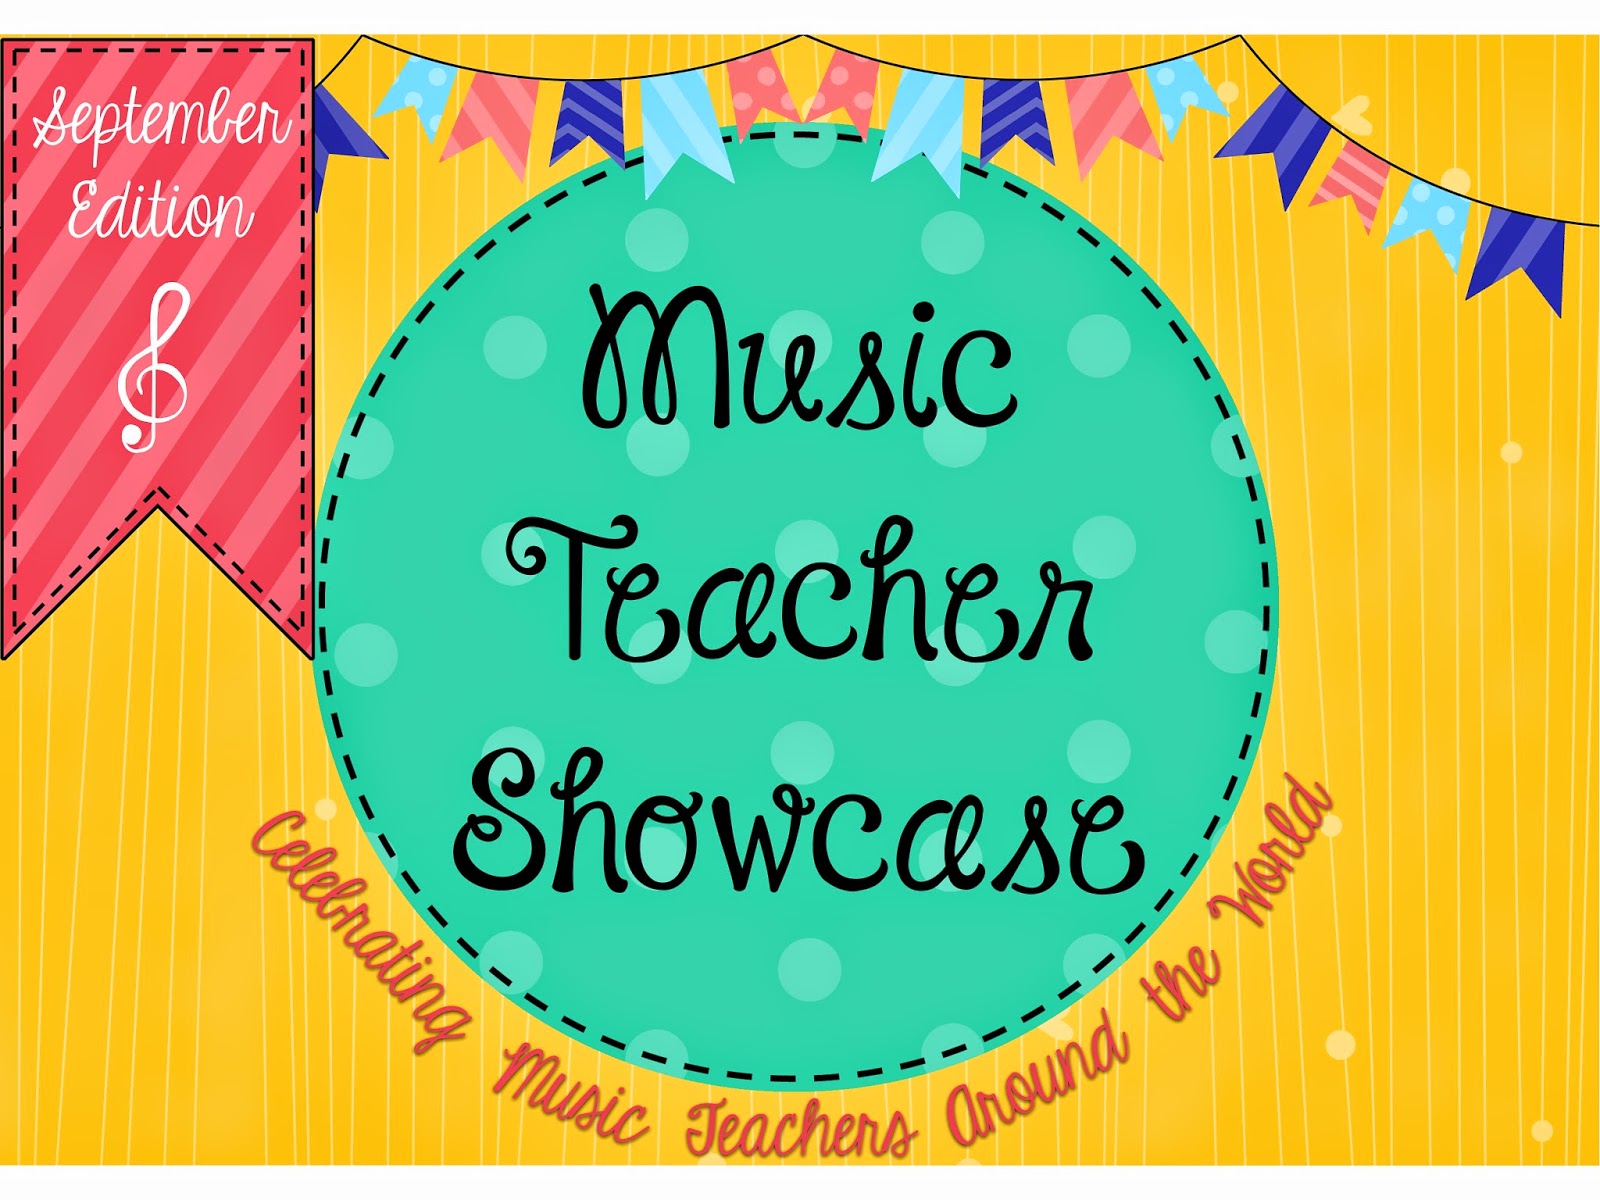 Music Teacher Showcase: September Edition